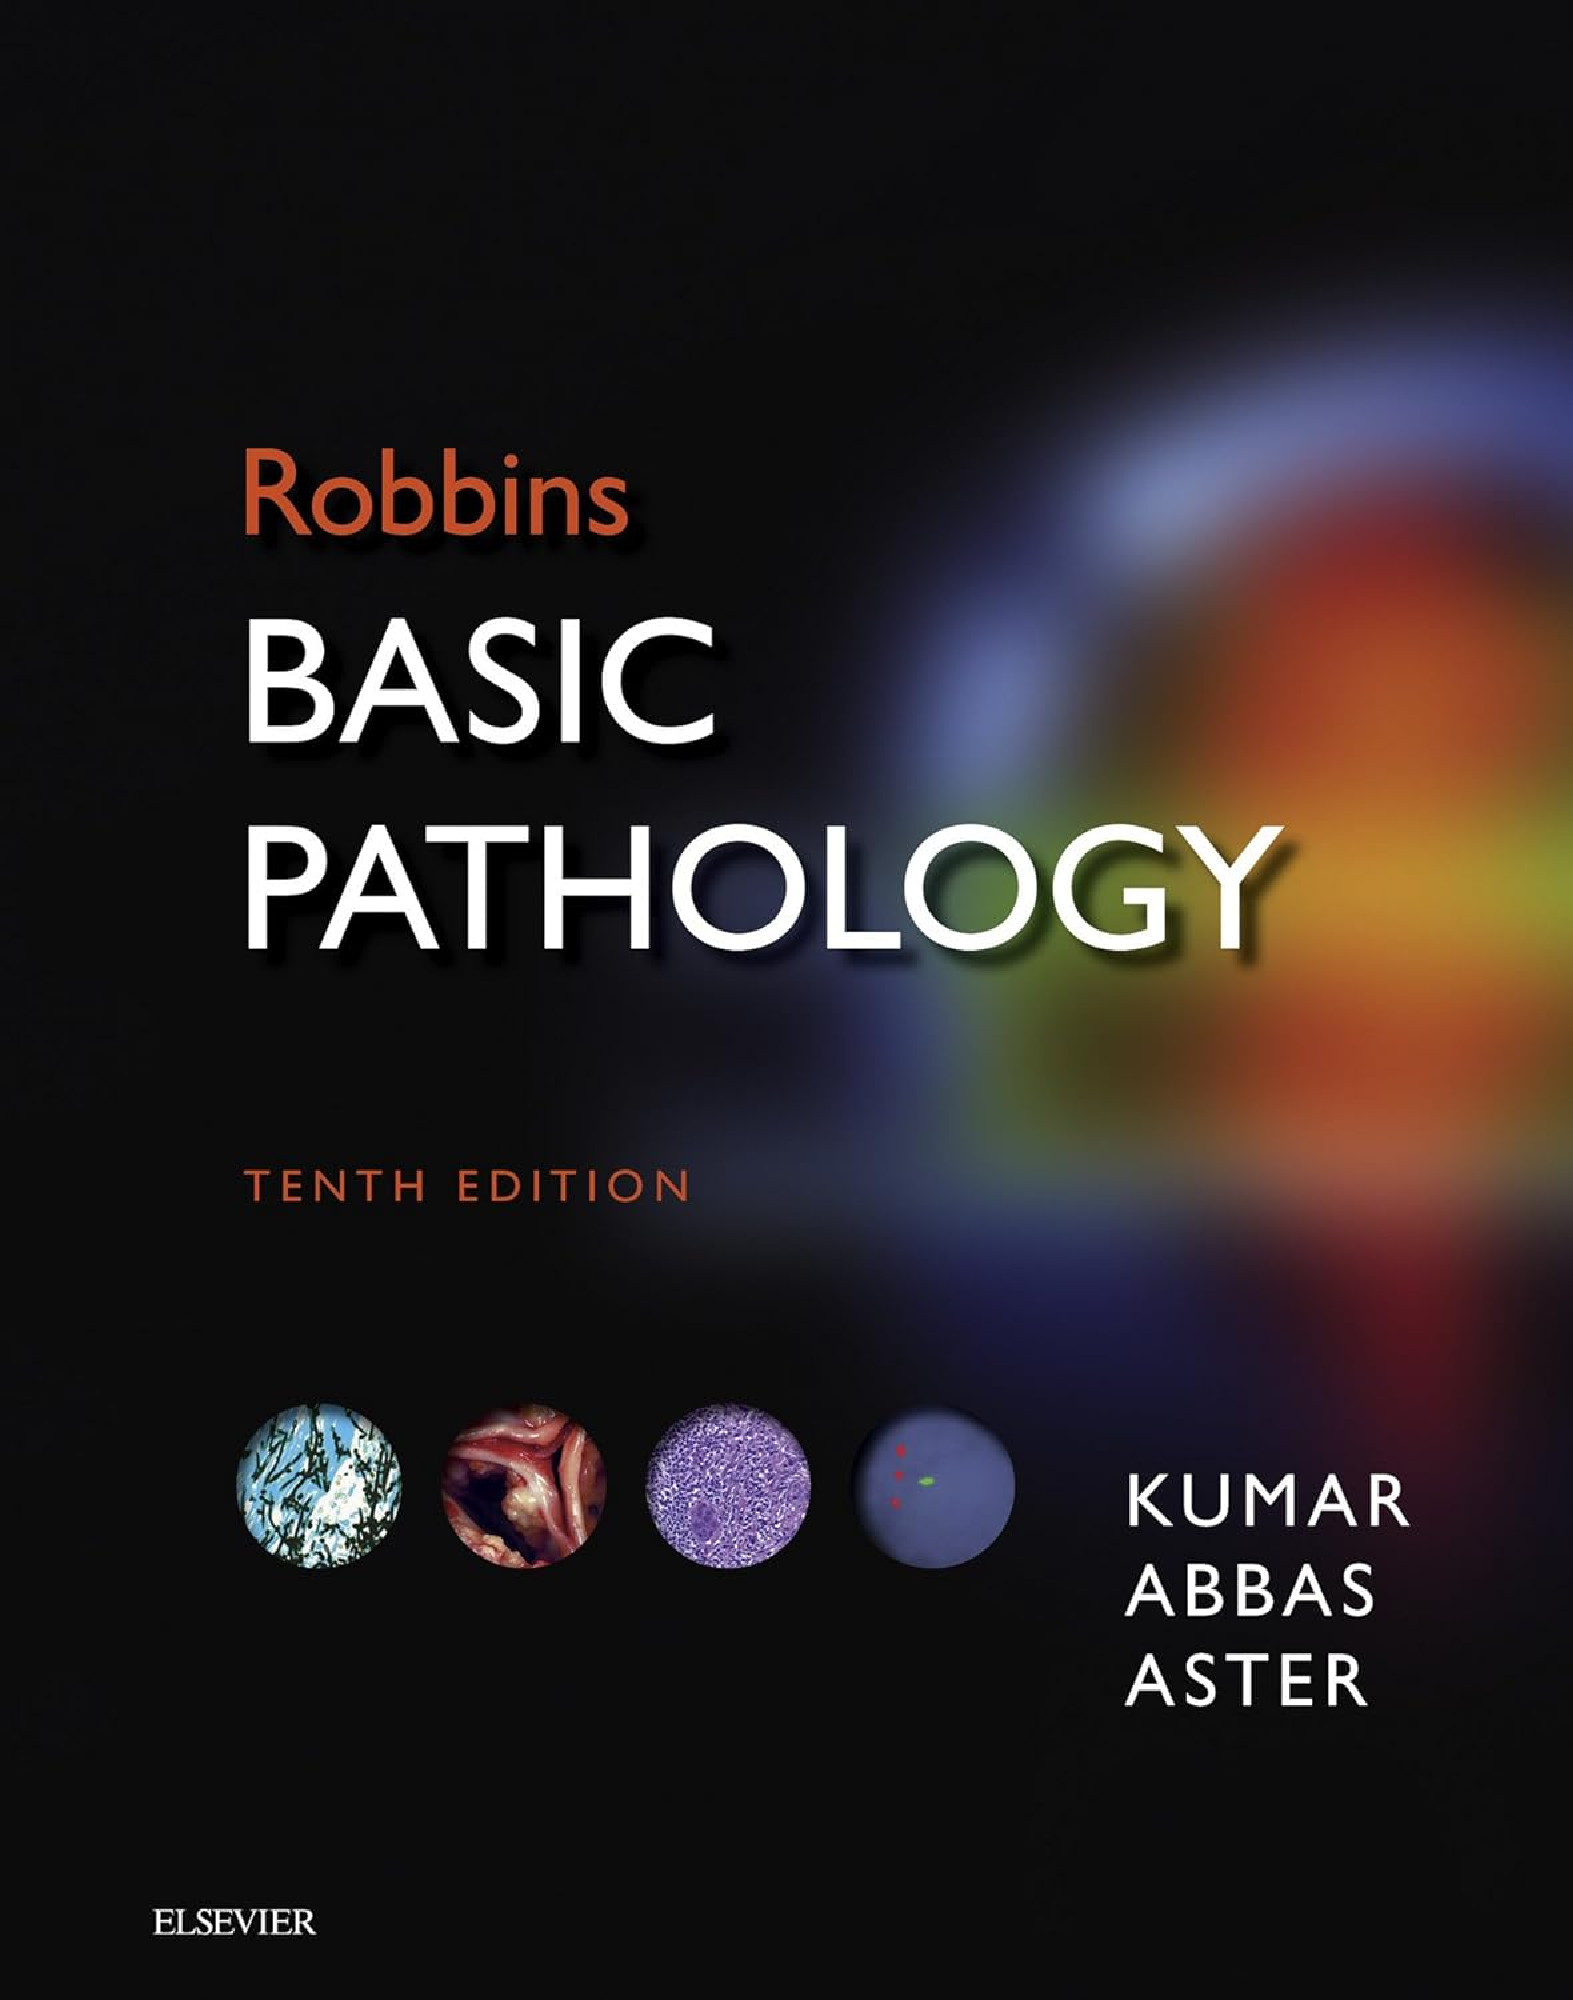 Robbins Basic Pathology 10th Ed (Robbins Pathology)